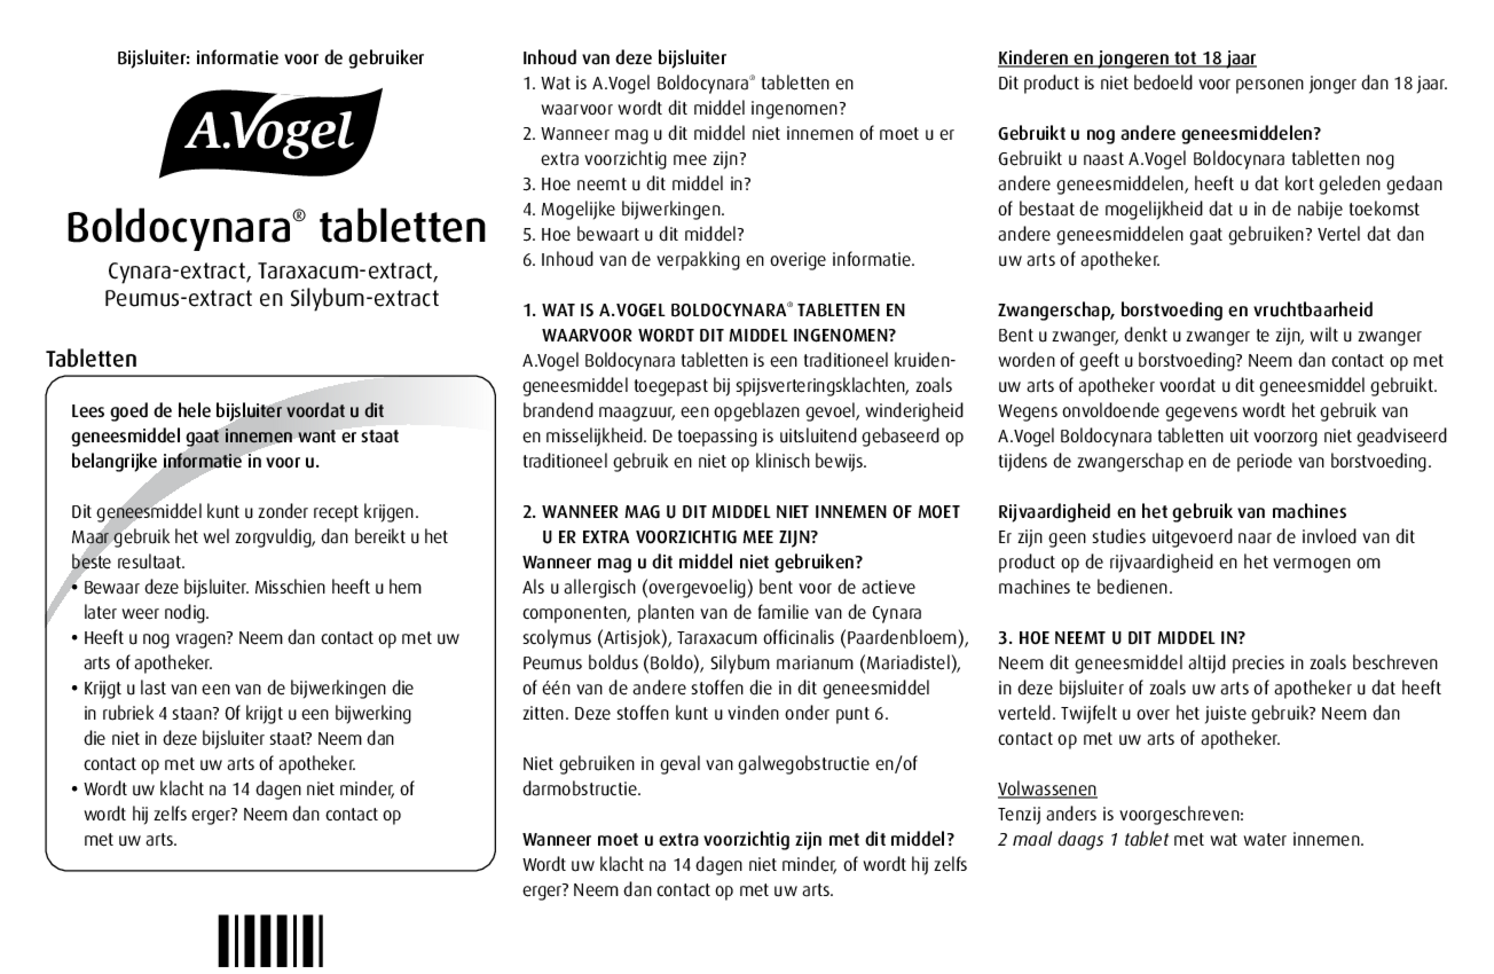 Boldocynara Tabletten afbeelding van document #1, bijsluiter